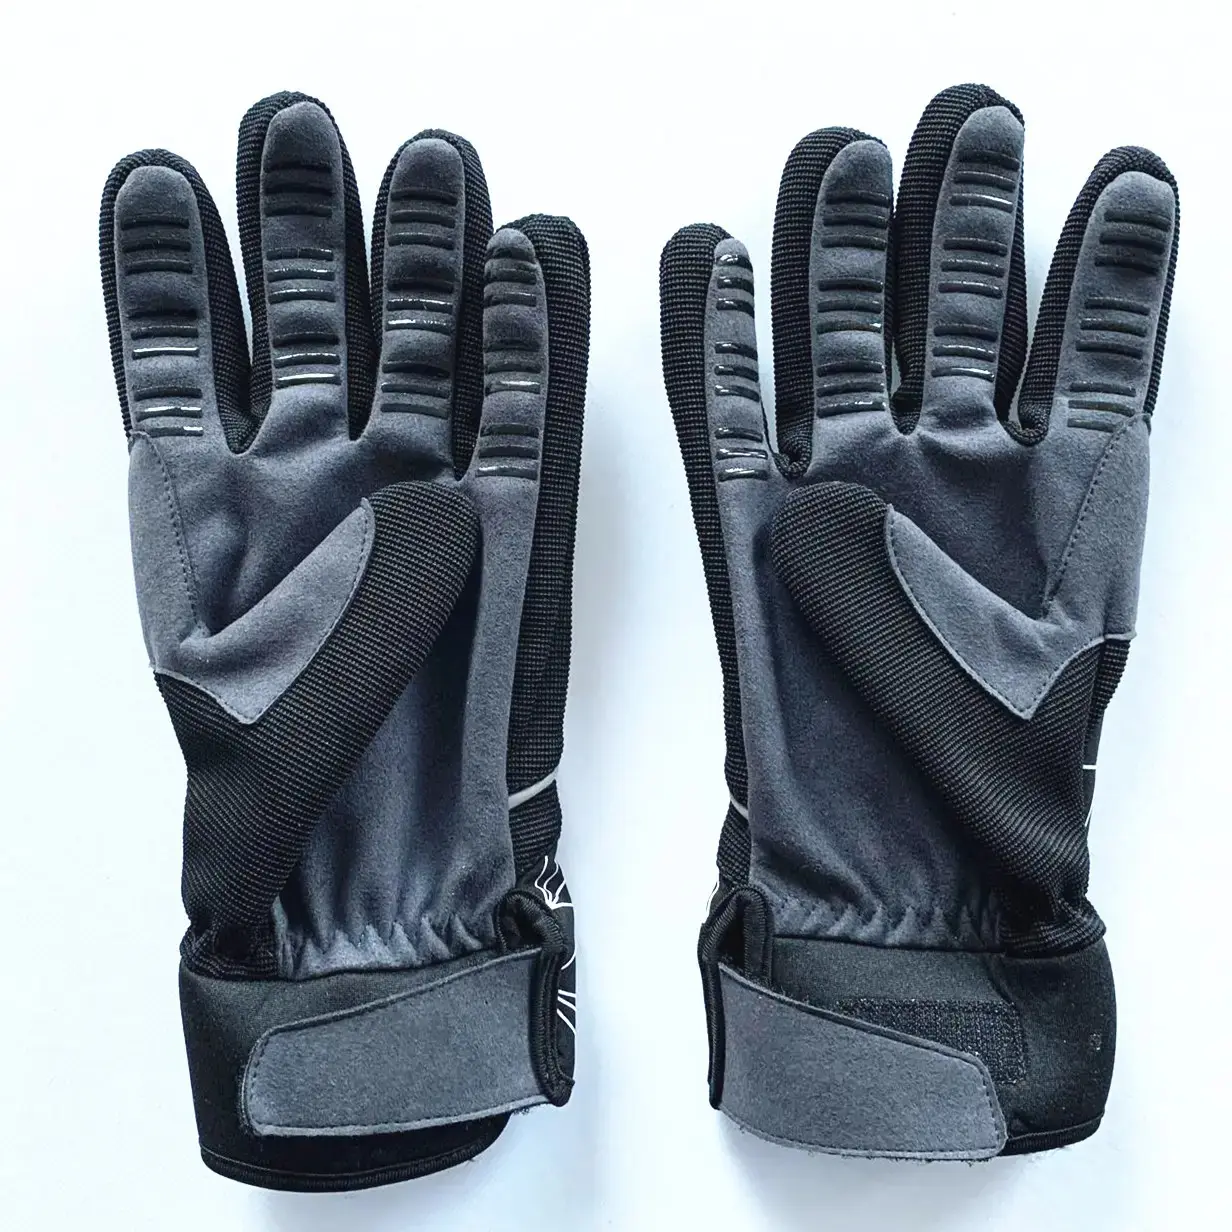 Winter-Elasthachs-Vlies-Outdoor-Laufrad-Handschuhe Handschuhe für Fahrrad hochwertige günstige Preis nachhaltige Nähte